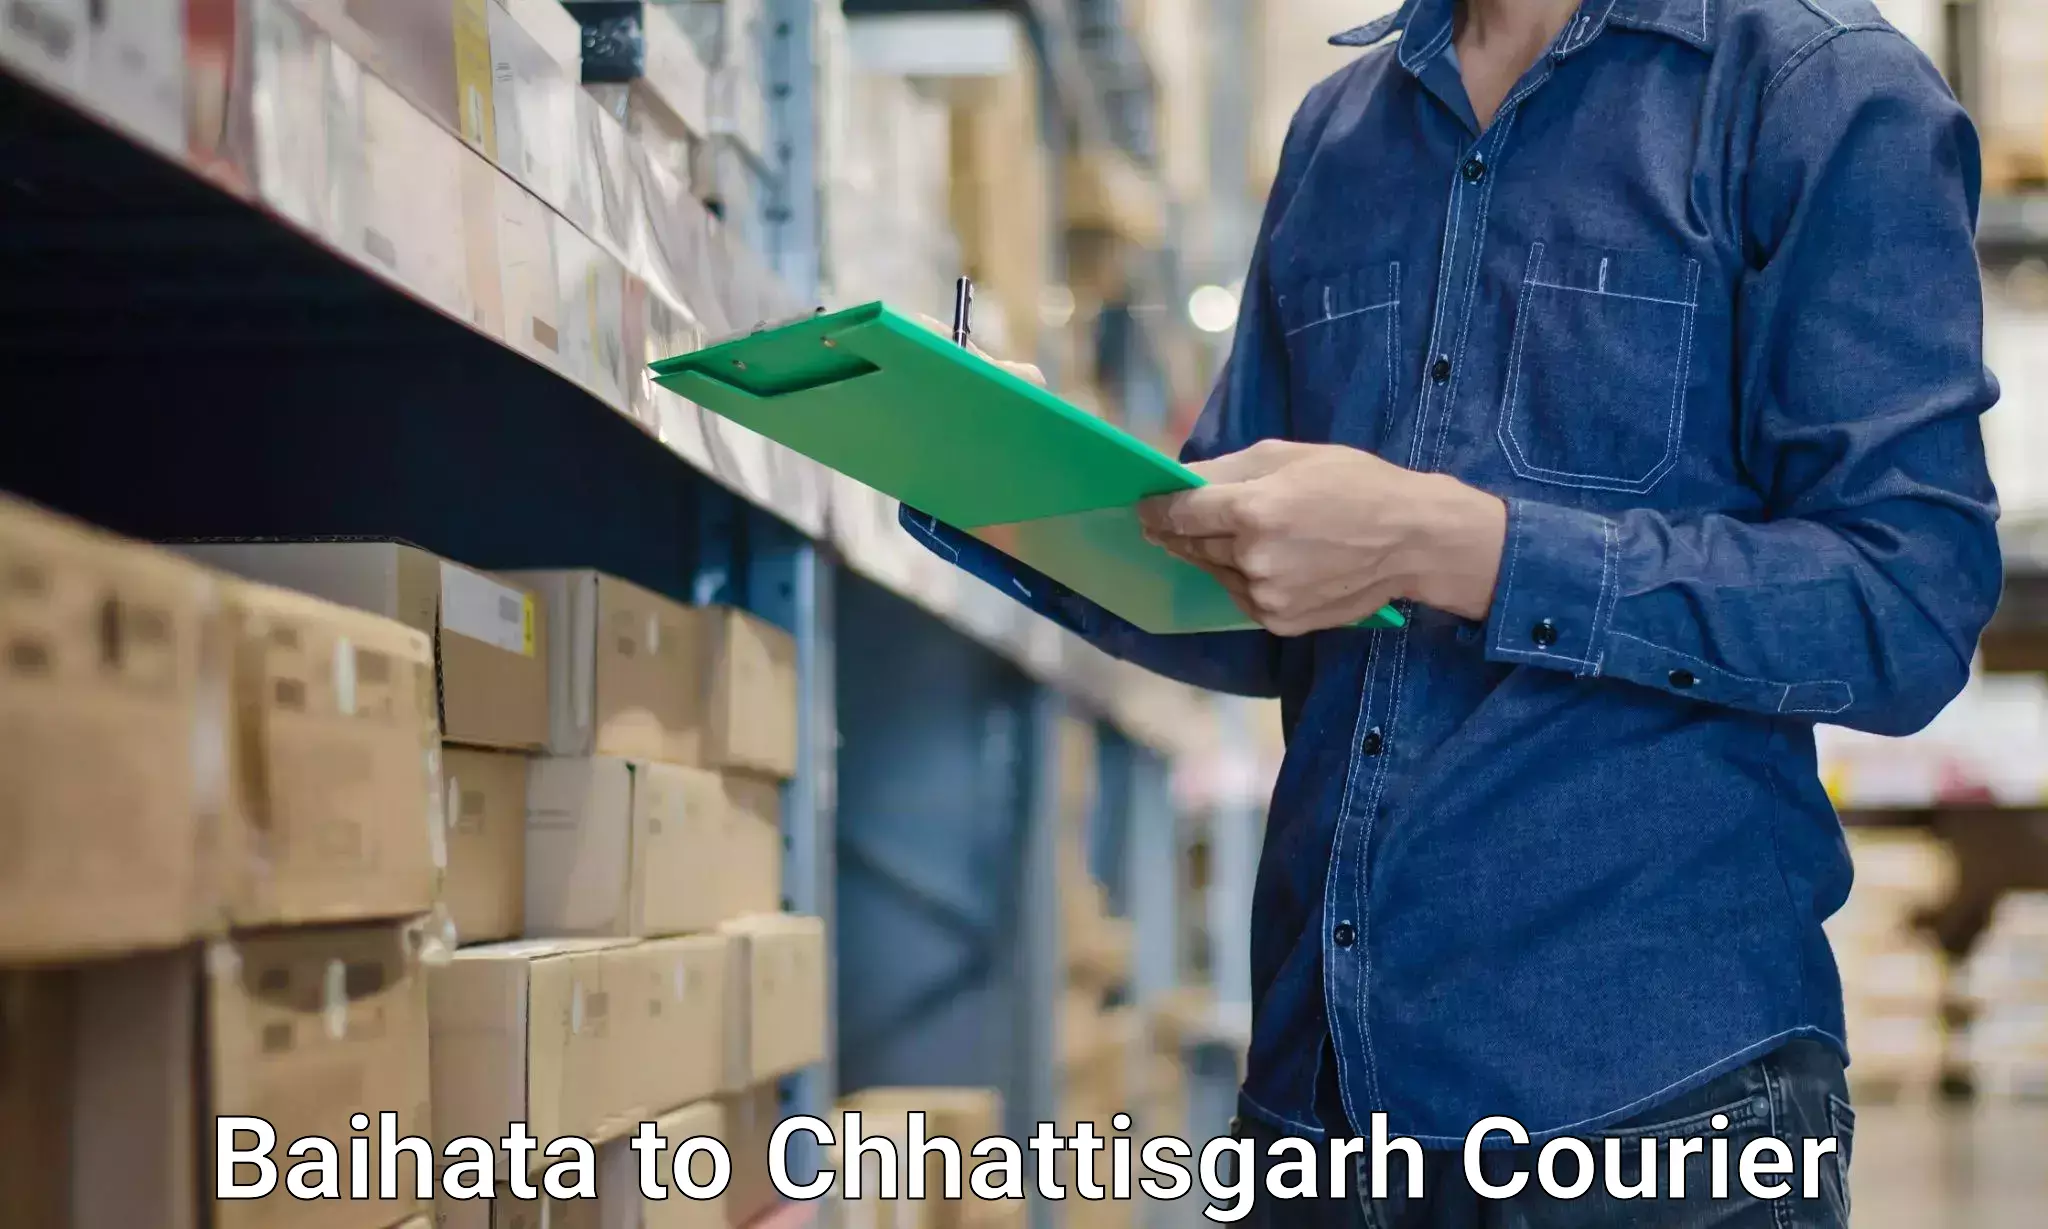 Comprehensive relocation services in Baihata to Chhattisgarh